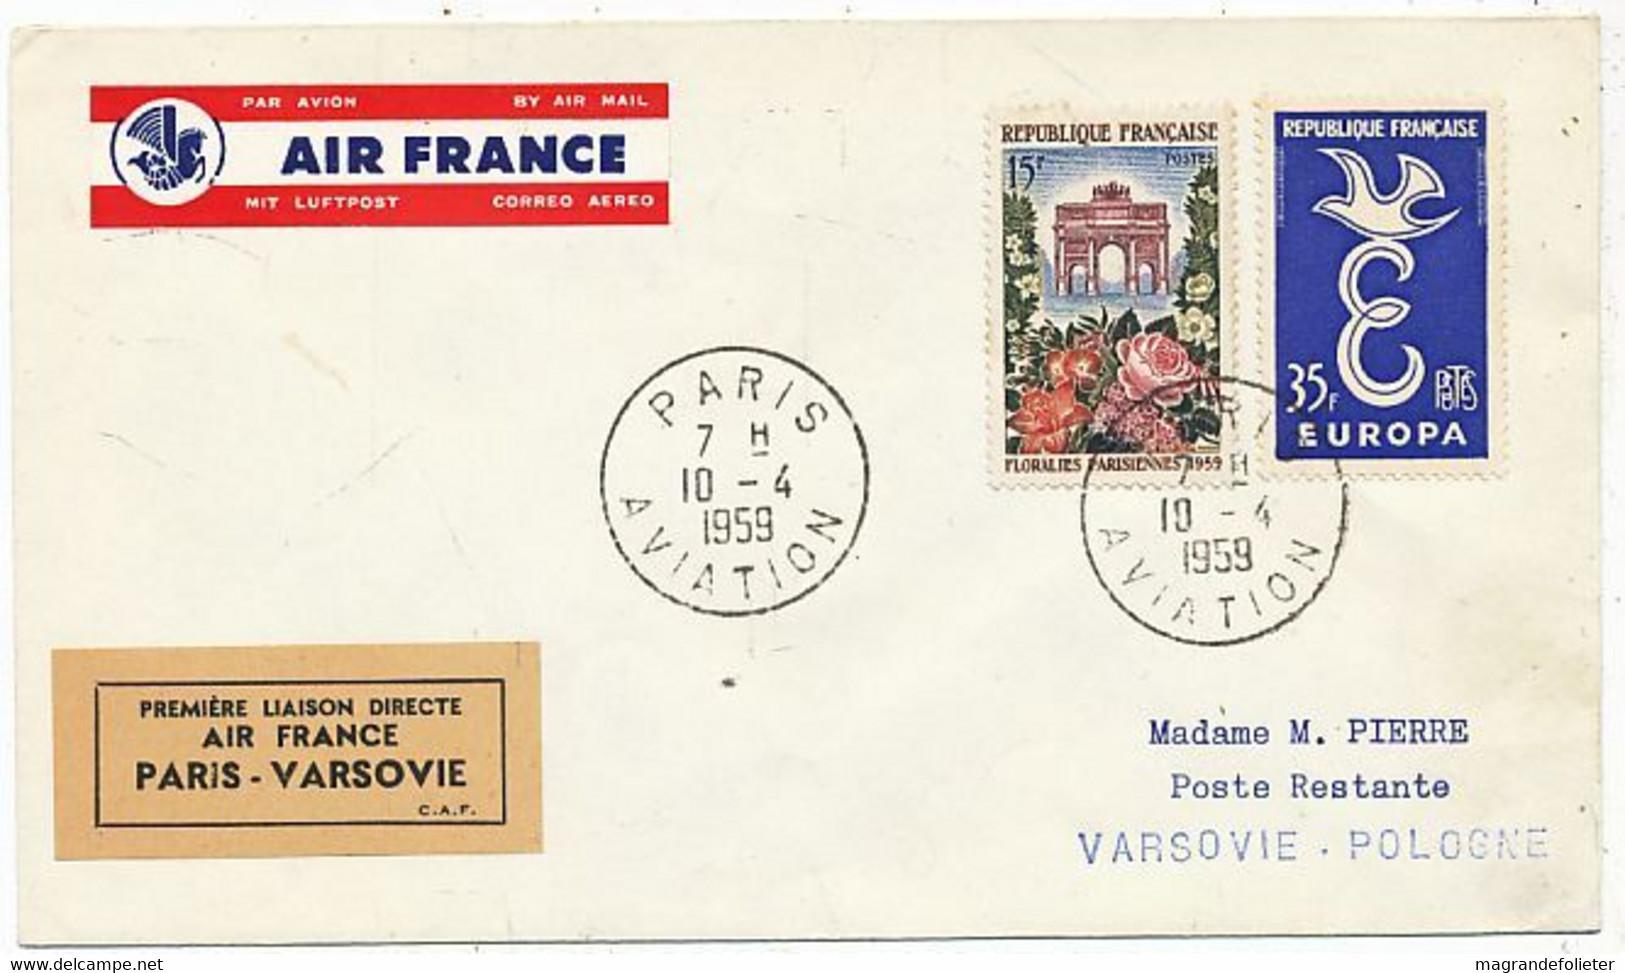 AVION AVIATION AIRLINE AIR FRANCE PREMIERE VOL DIRECT PARIS-VARSOVIE 1959 - Certificats De Vol